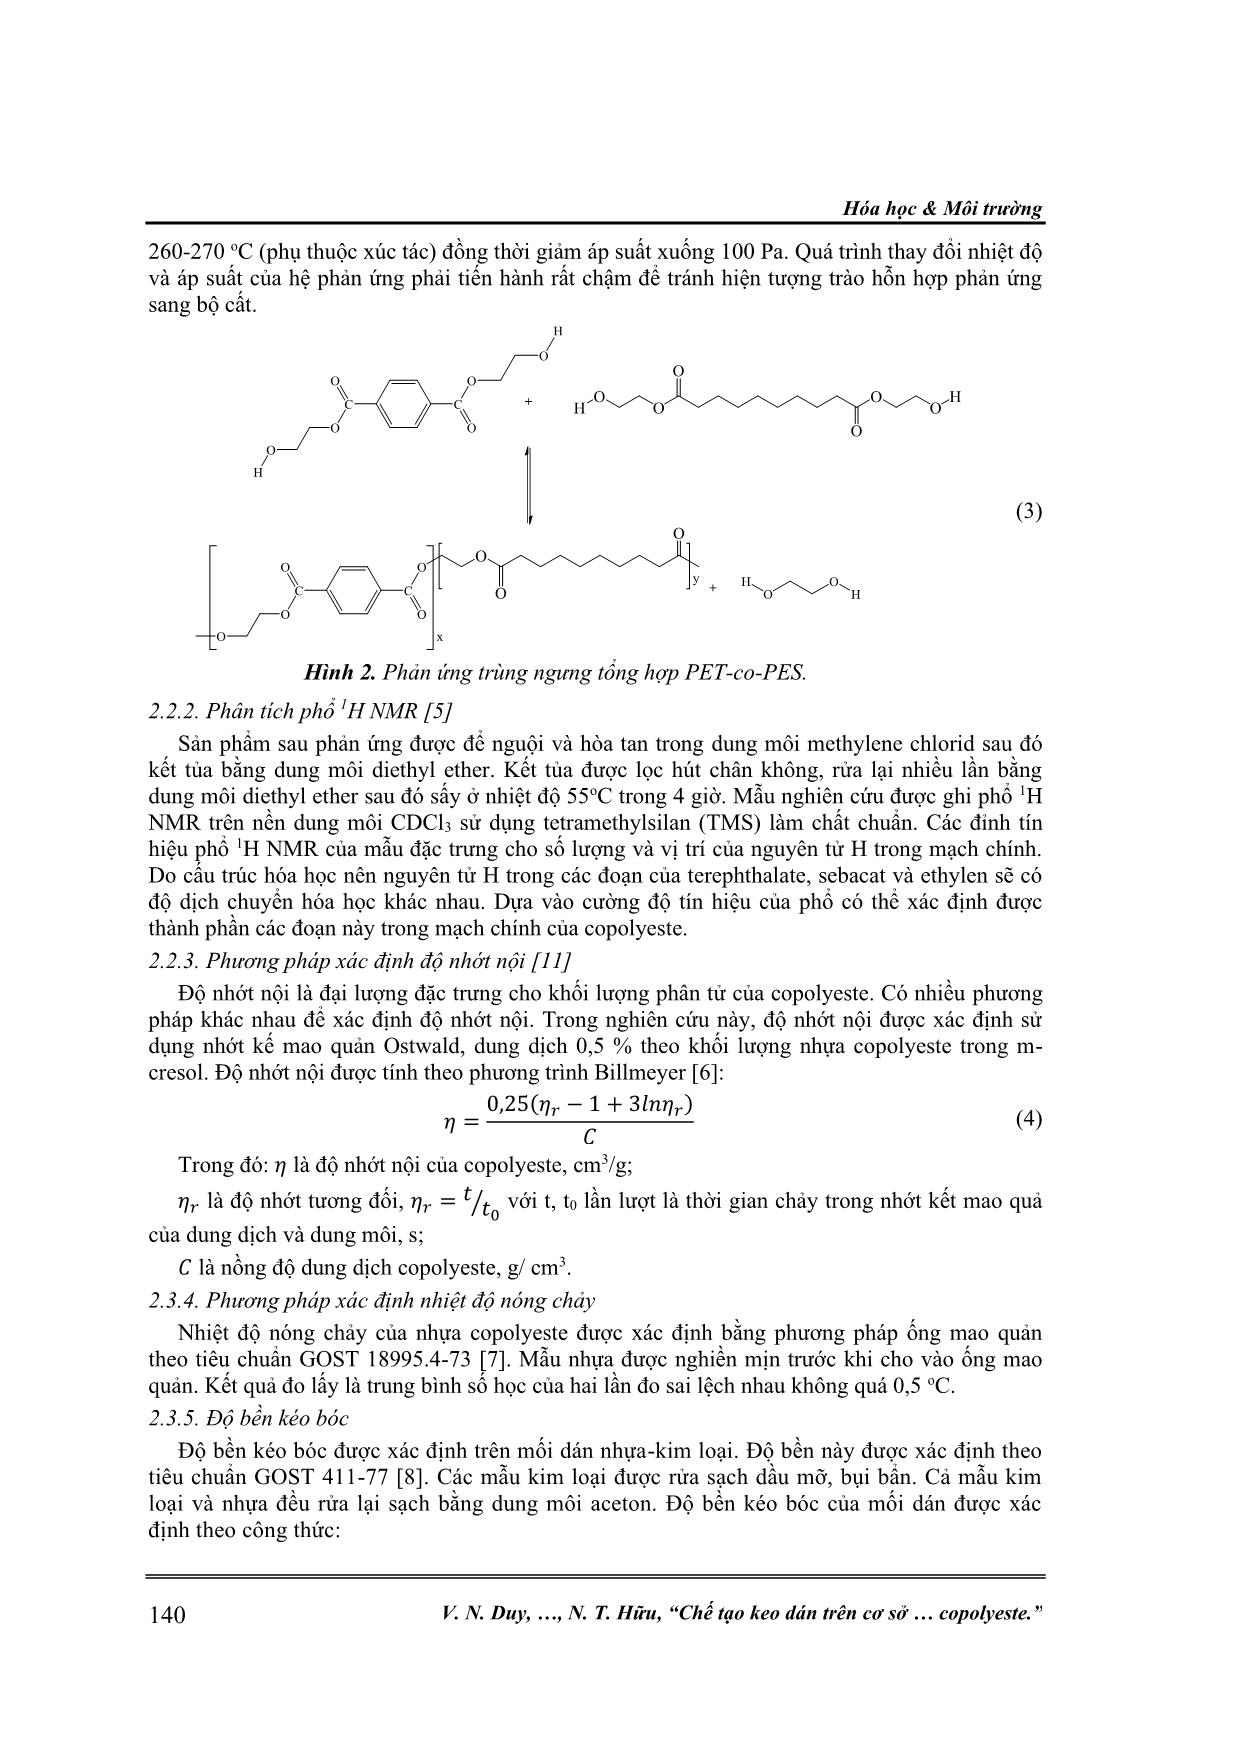 Chế tạo keo dán trên cơ sở poly (ethylen terephthalatco-ethylen sebacat) copolyeste trang 3